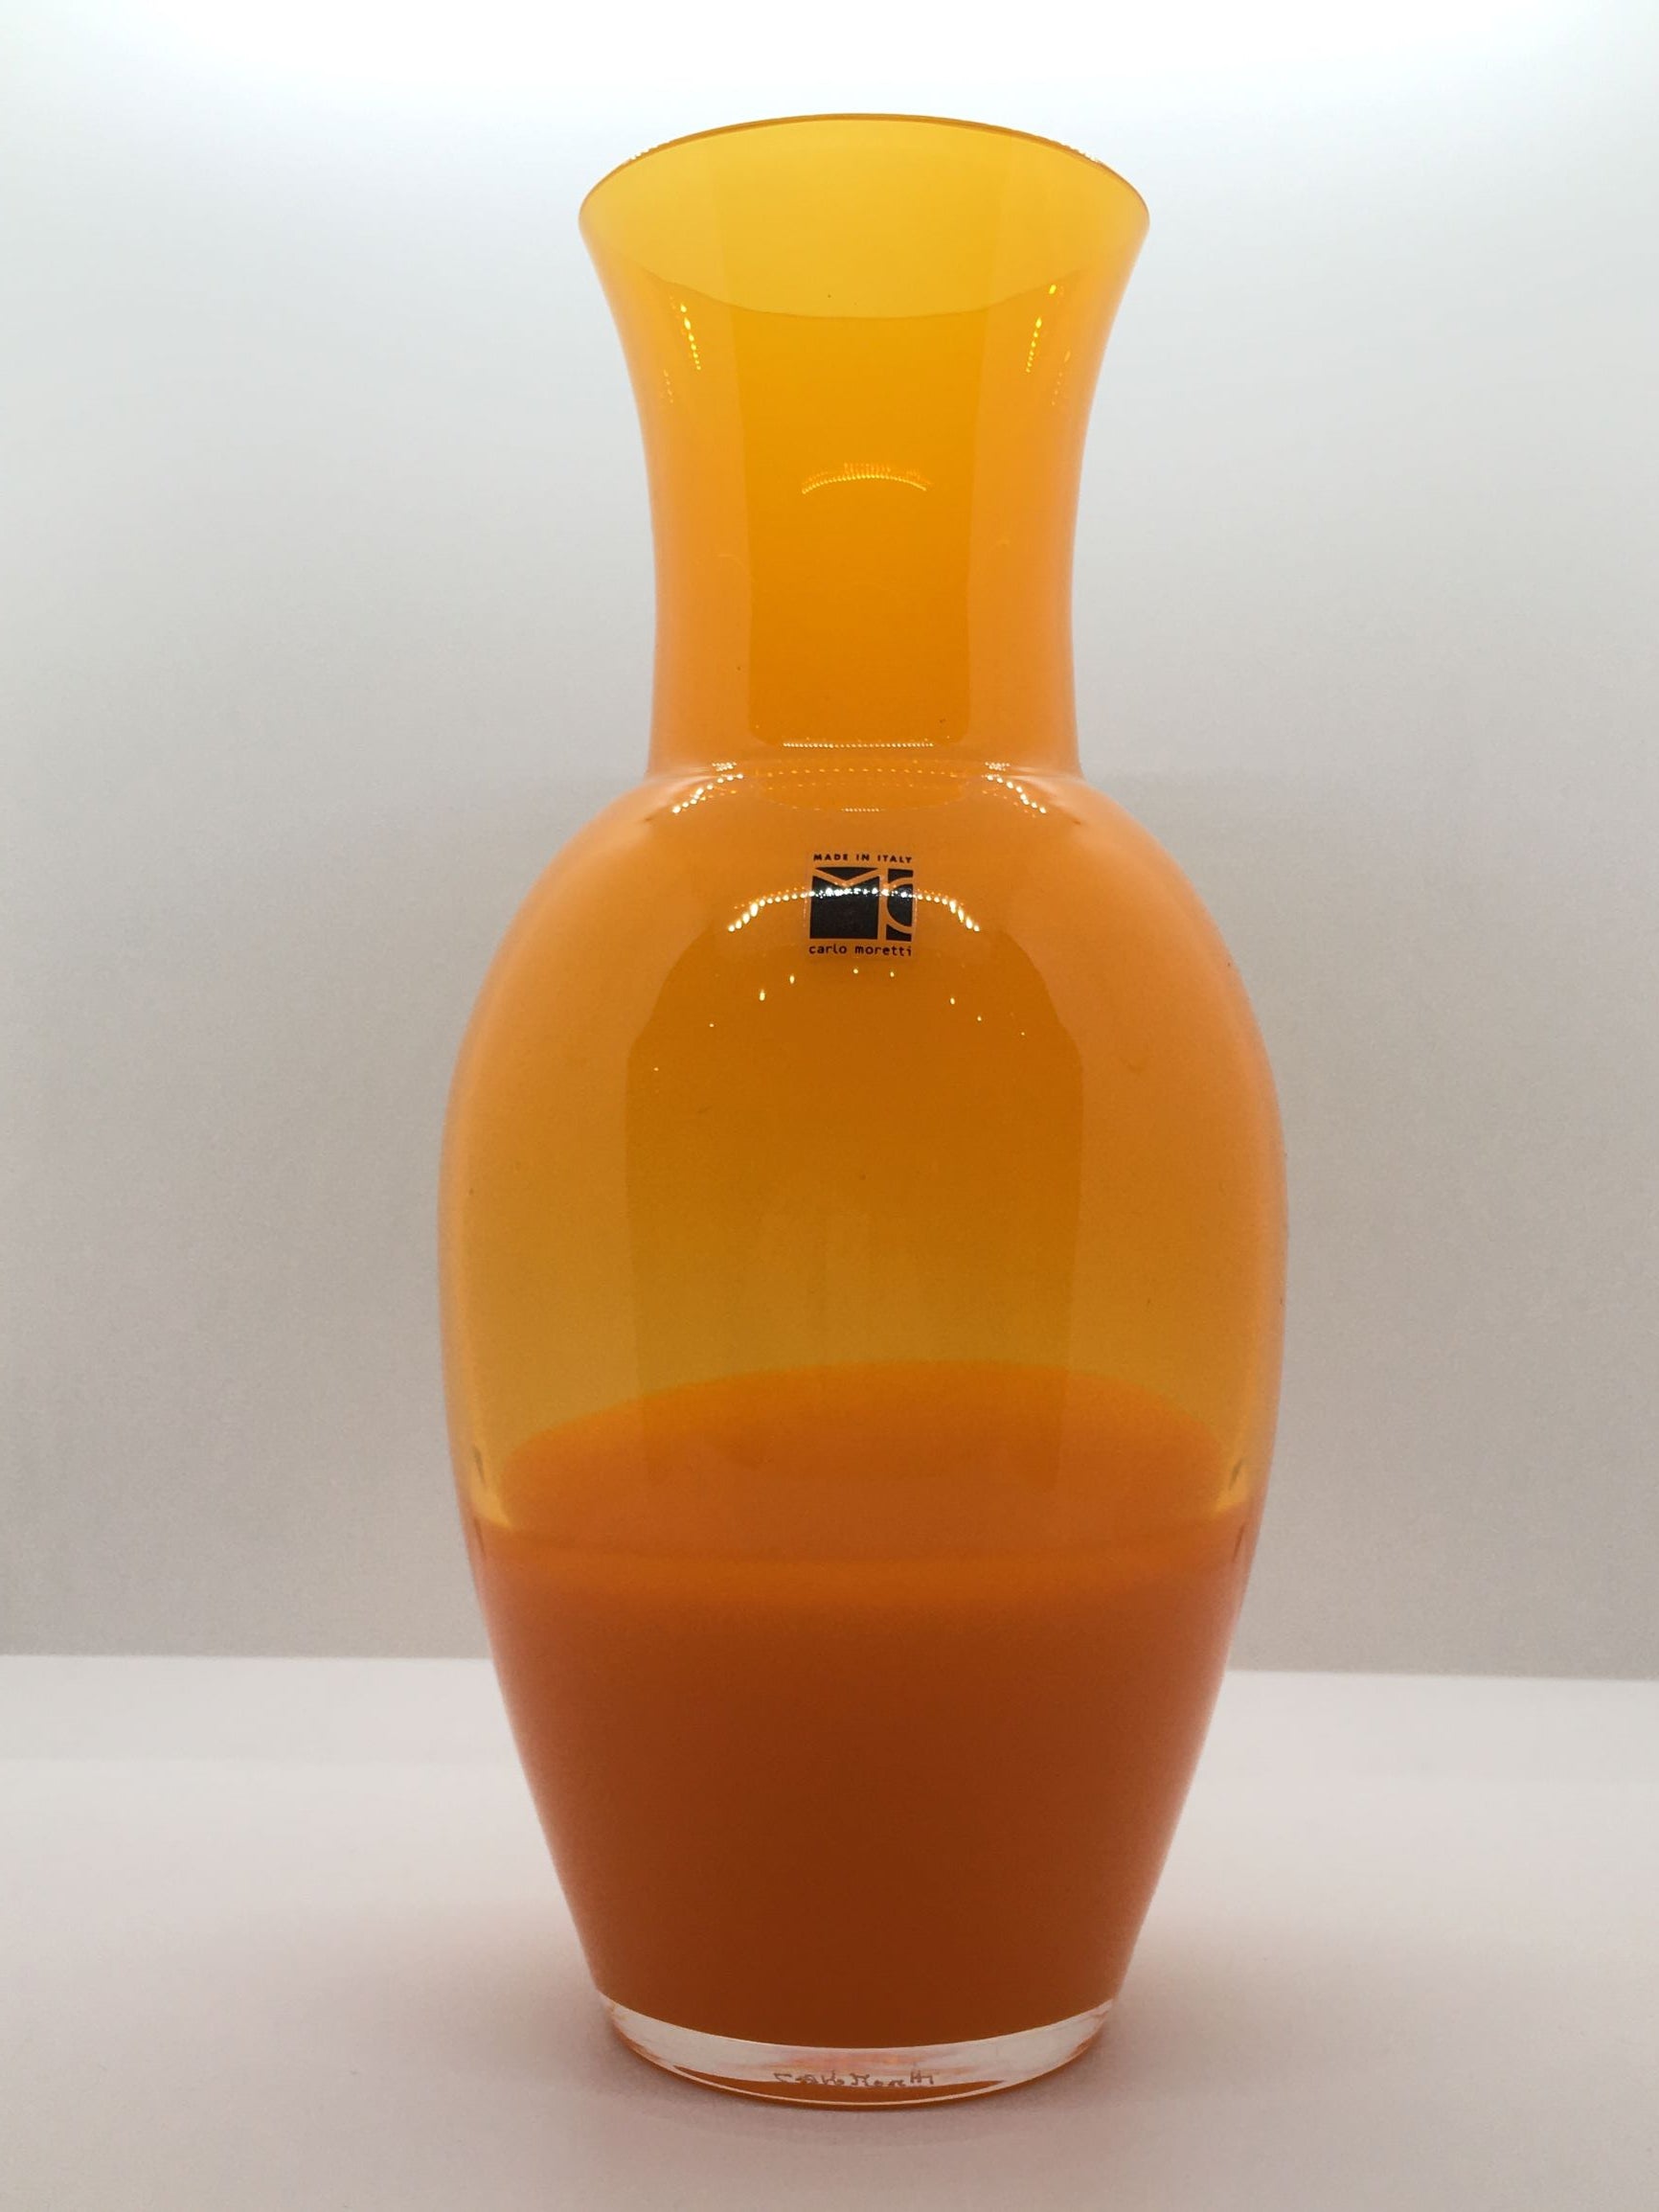 Vaso in vetro di Murano soffiato di colore arancione traslucido. EDIZIONE LIMITATA Dimensioni: altezza mm 250, diametro mm 140